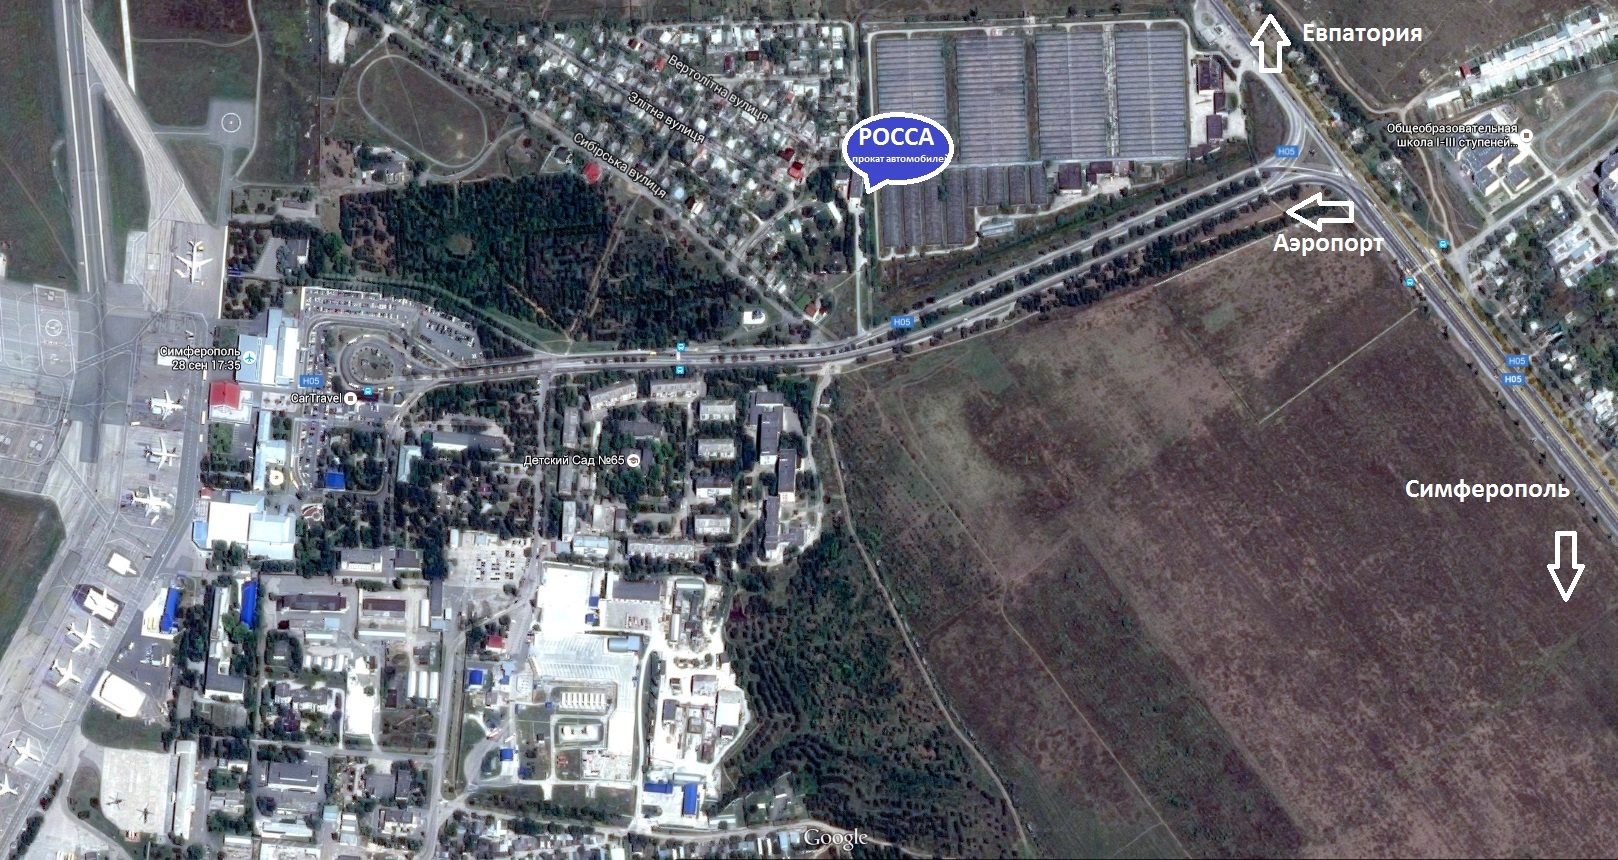 Офис РОСС прокат автомобилей в Крыму, в Симферополе